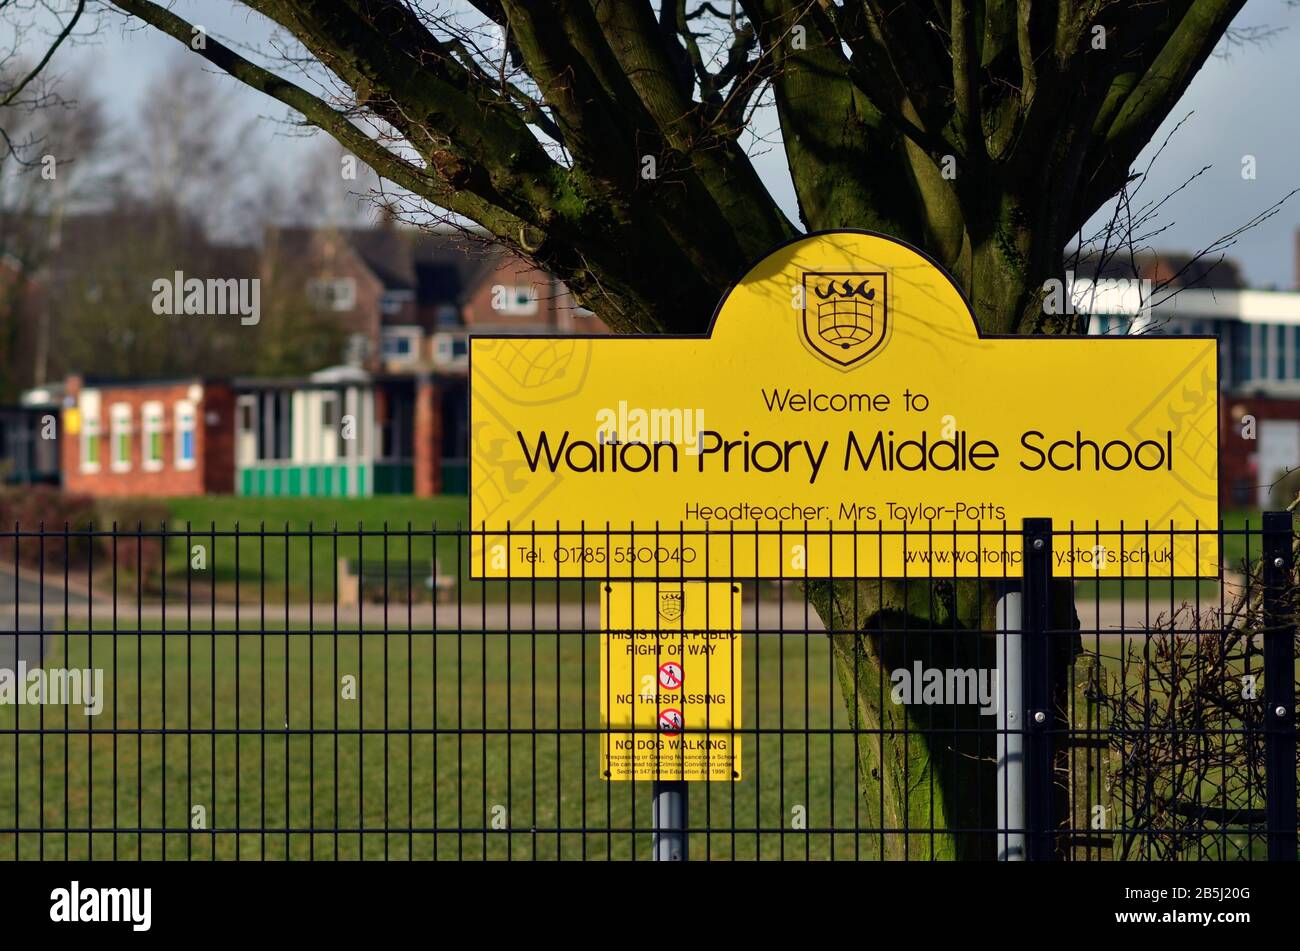 Stone/Großbritannien - 8. März 2020: Schild der Walton Priory Middle School. Stockfoto